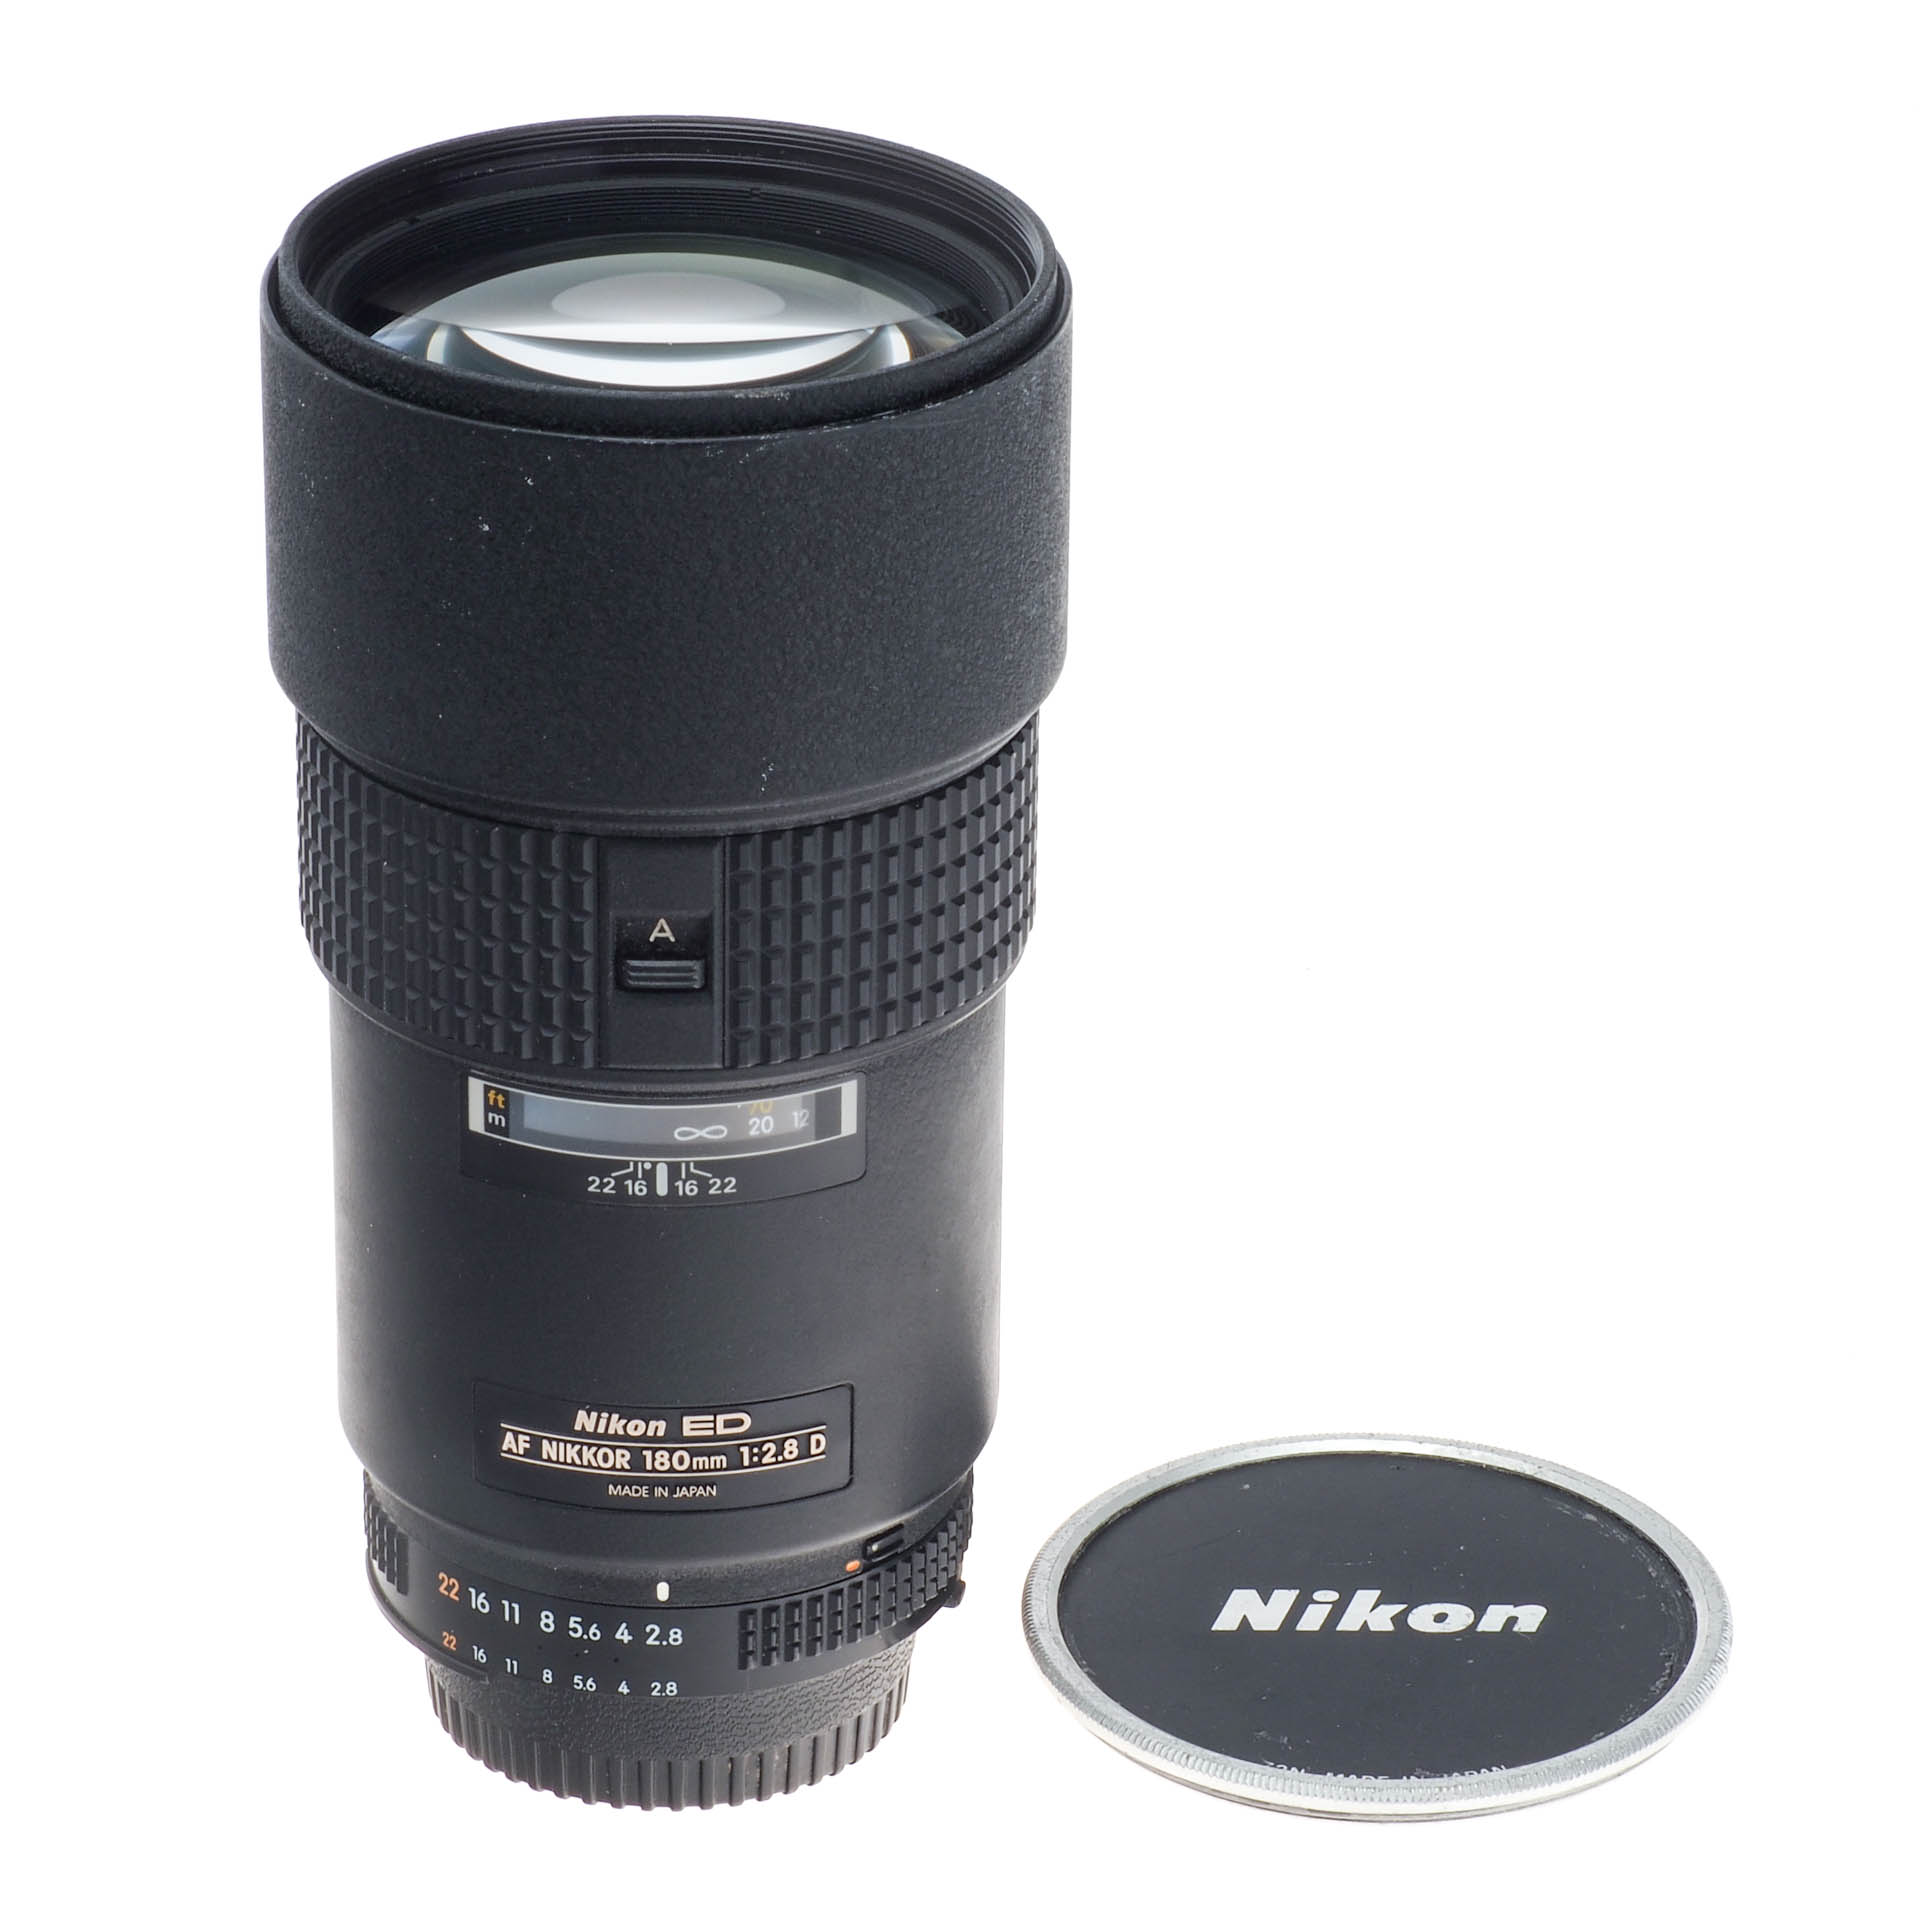 Buy Nikon Nikkor AF 180mm F2.8 D Telephoto Autofocus Prime Lens 1940 -  National Camera Exchange